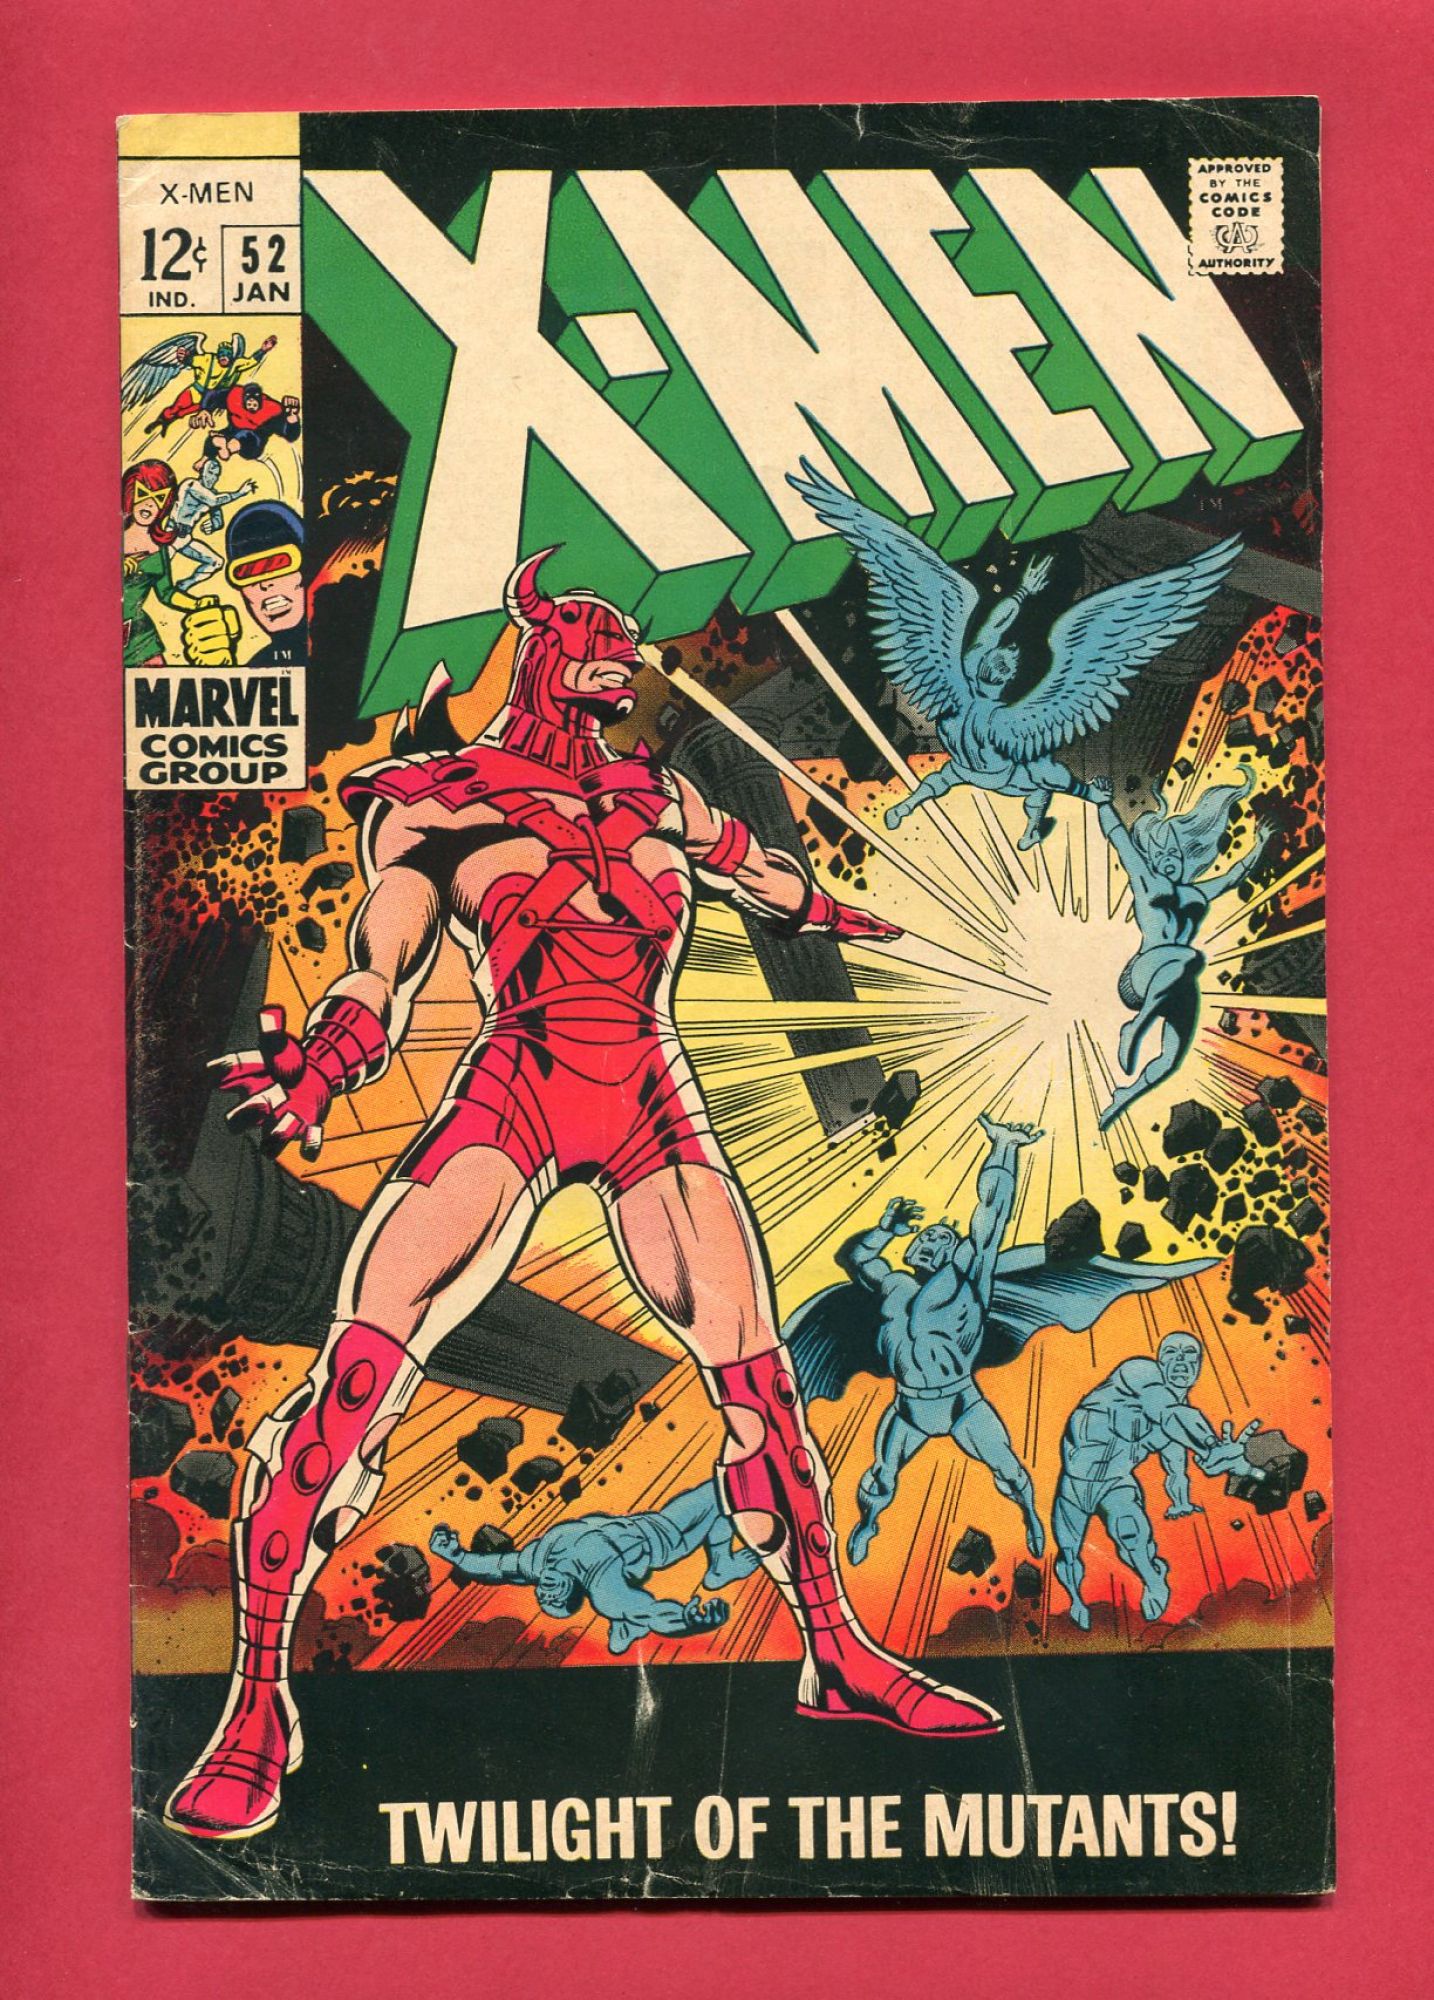 X-Men #52, Jan 1969, 4.5 VG+